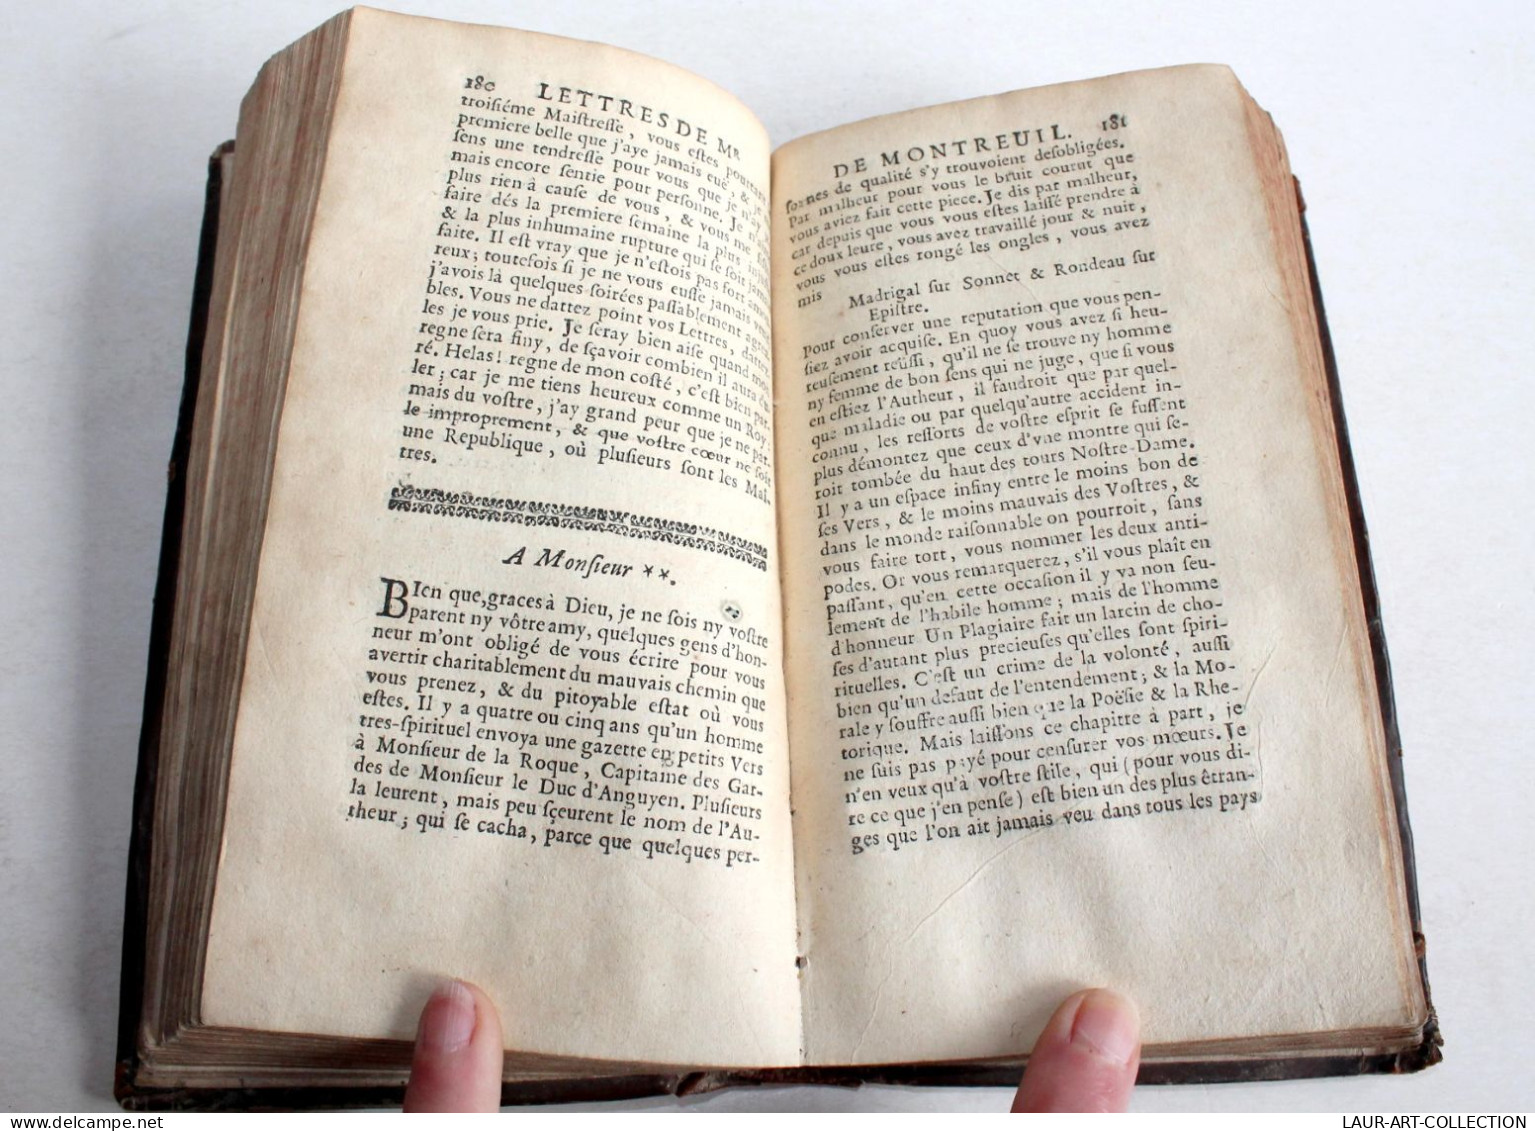 LES OEUVRES DE MONSIEUR DE MONTREUIL 1671 CLAUDE BARBIN, POESIE ET LITTERATURE / ANCIEN LIVRE DU XVIIe SIECLE (2204.9) - Antes De 18avo Siglo